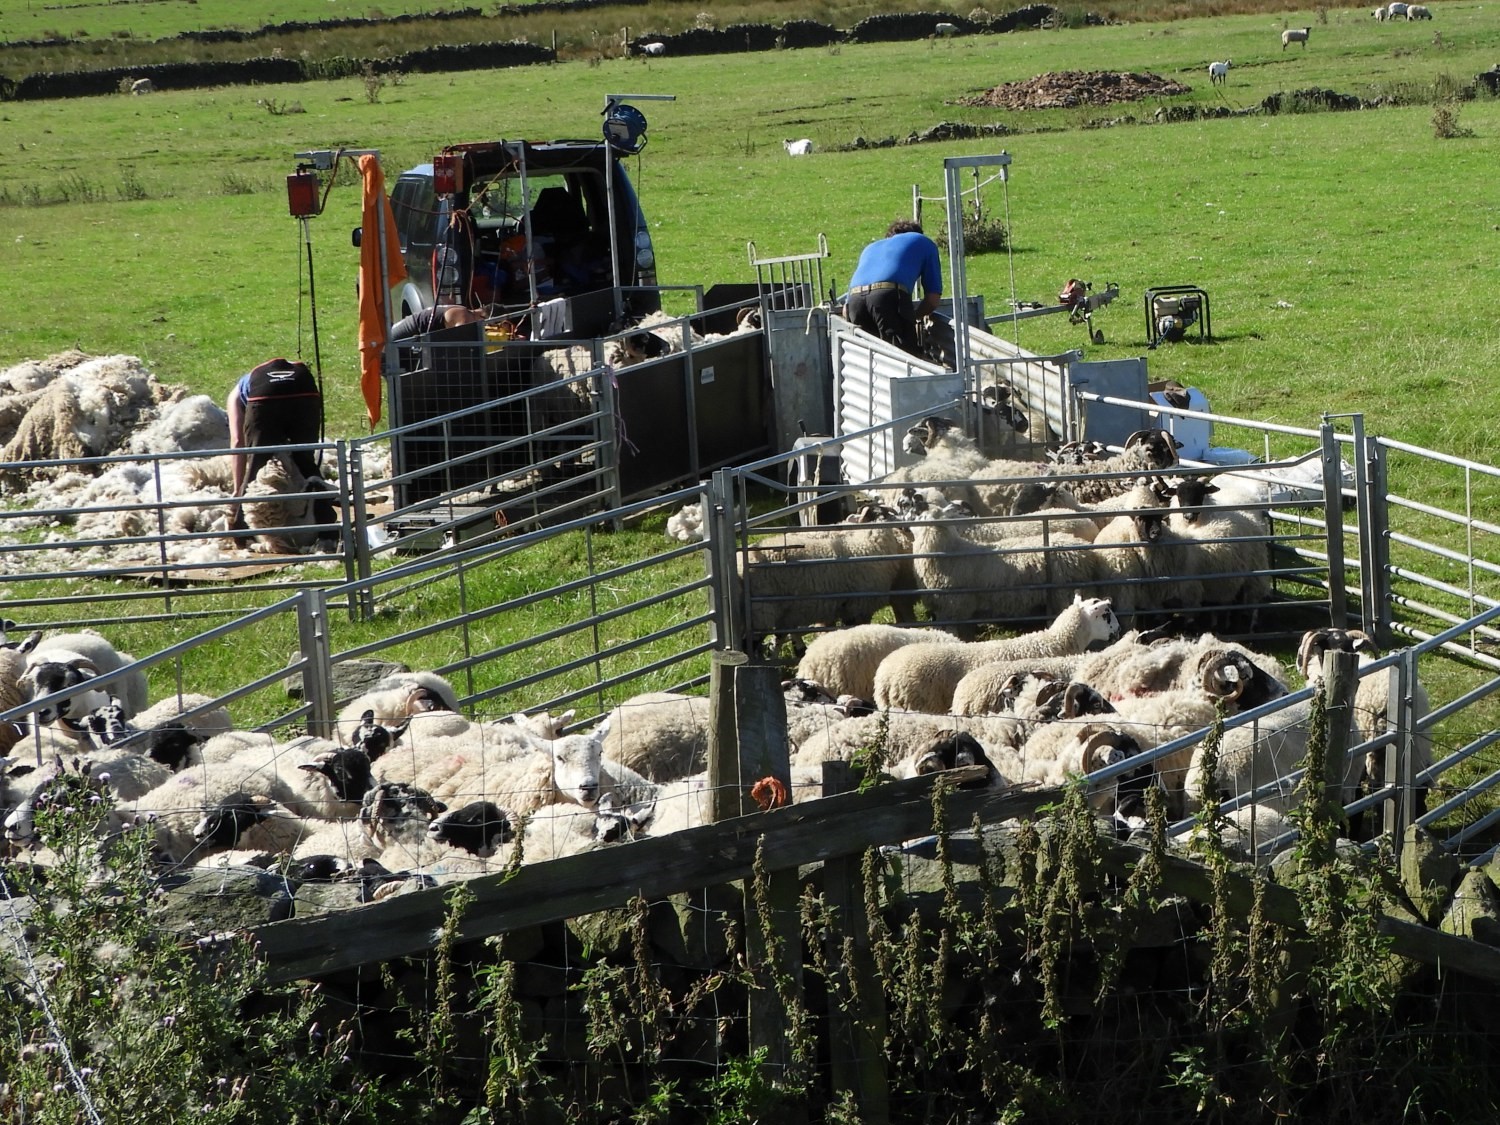 Sheep shearing at High Snowden